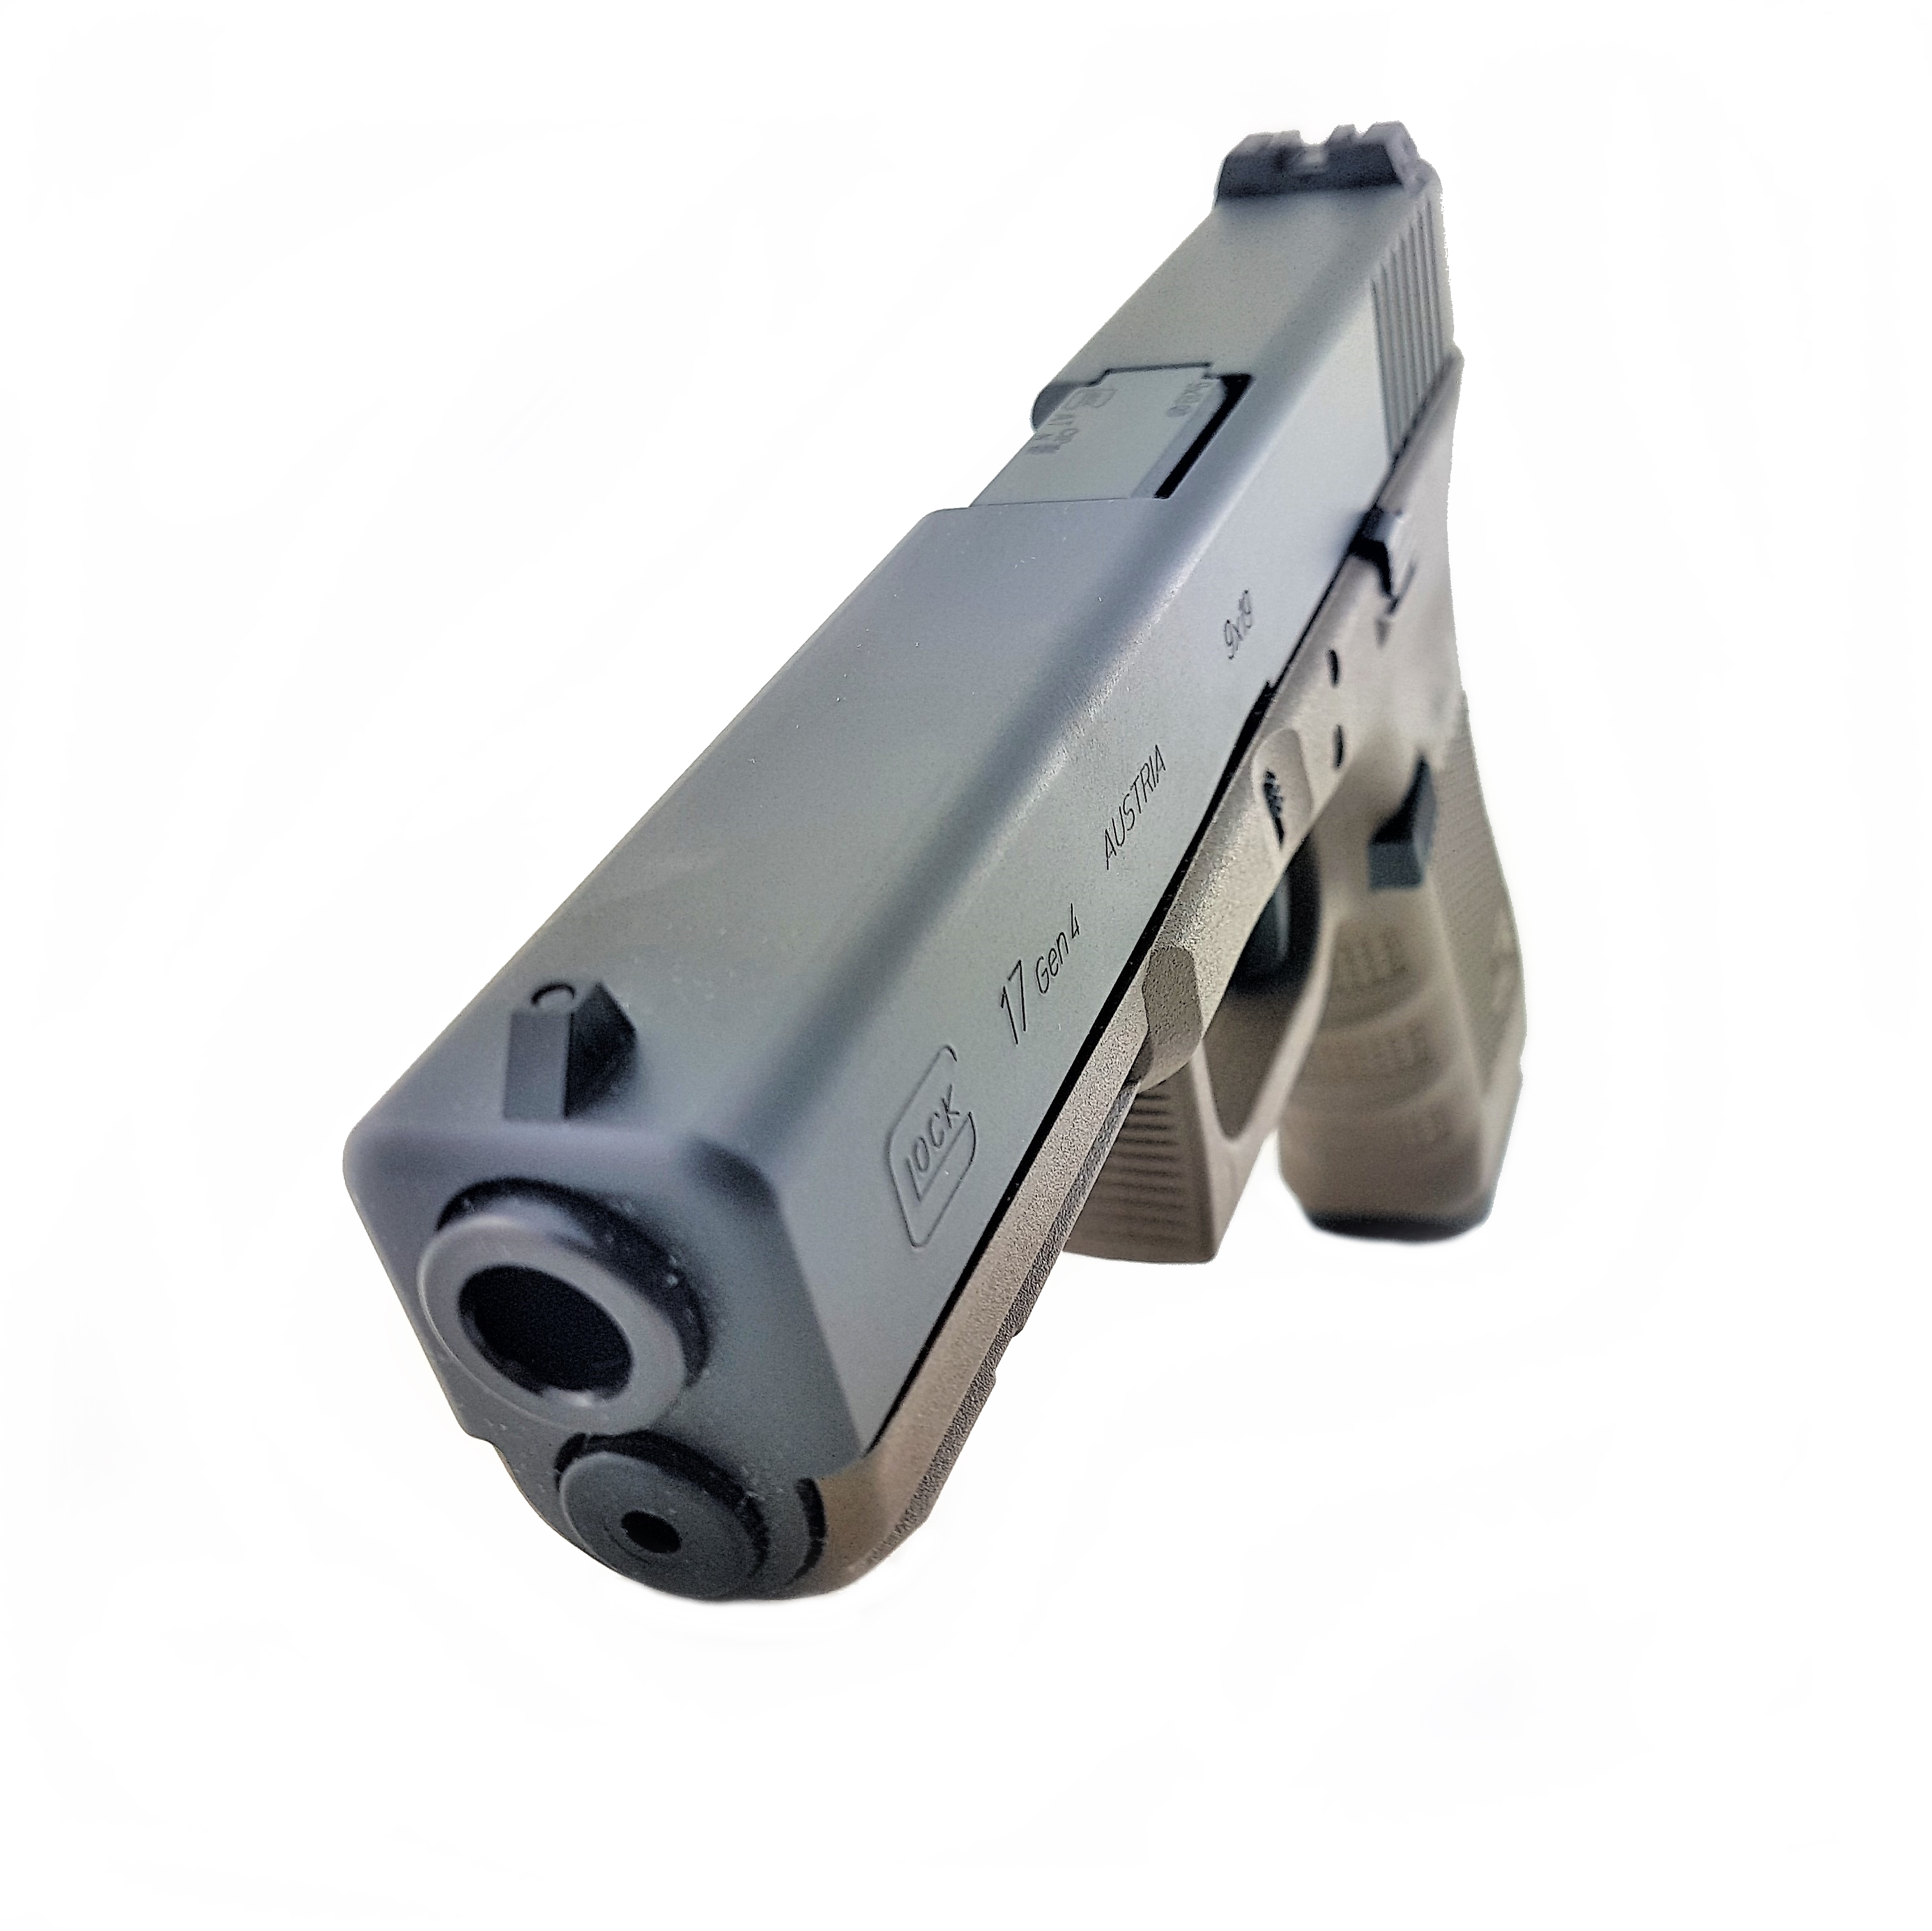 Pistole Glock 17 FDE im Kaliber 9x19 schießen